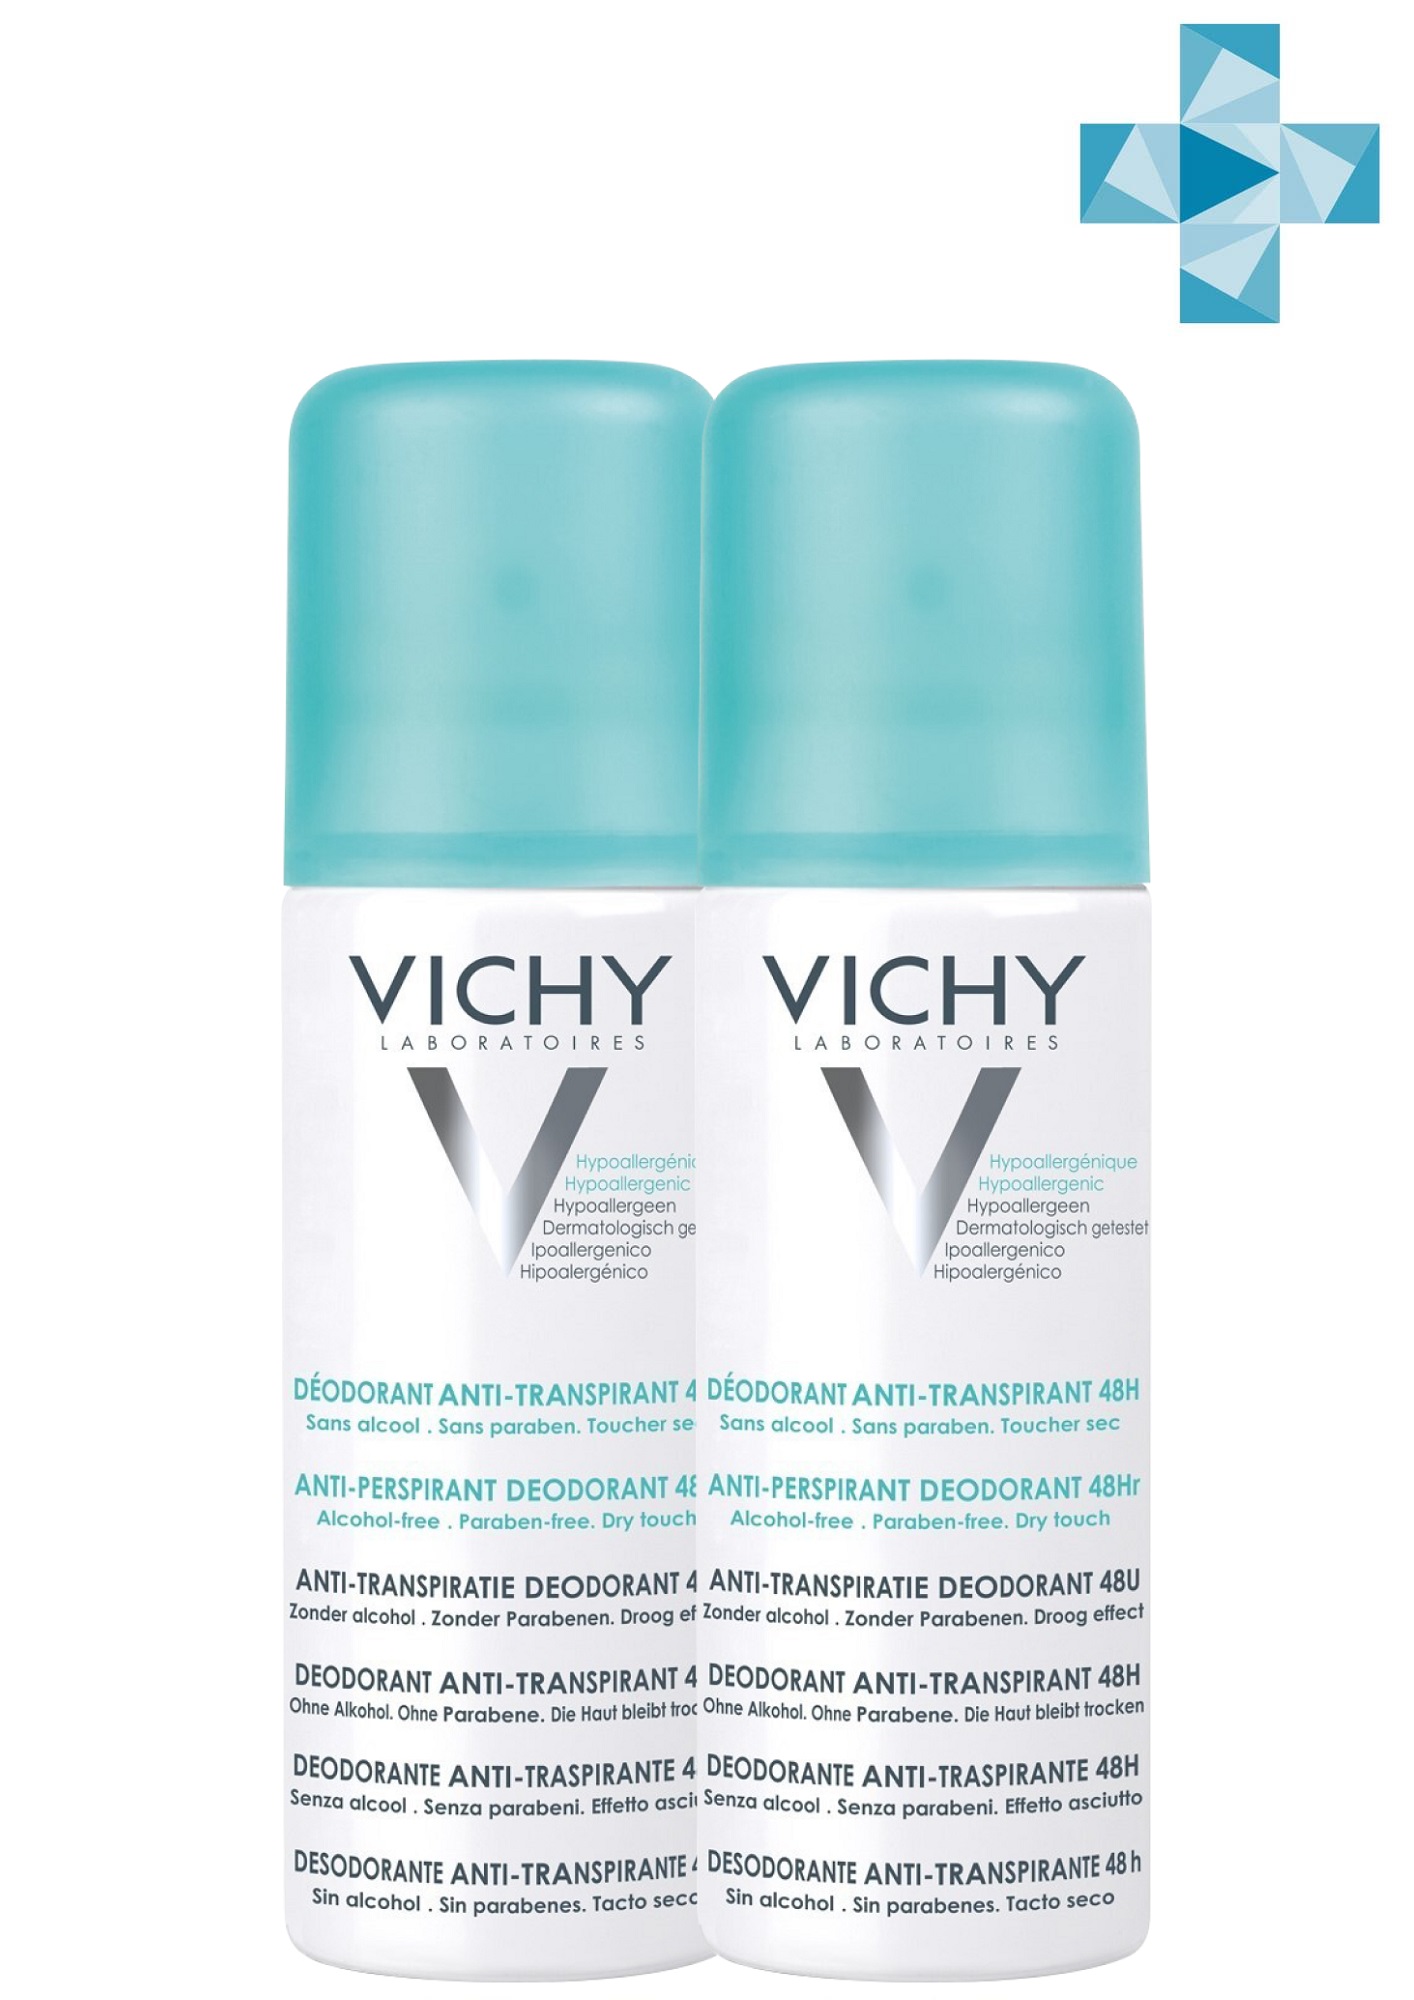 Vichy Комплект Дезодорант-аэрозоль регулирующий избыточное потоотделение 48 часов, 2 х 125 мл (Vichy, Deodorant) дезодорант аэрозоль виши регулирующий 125 мл